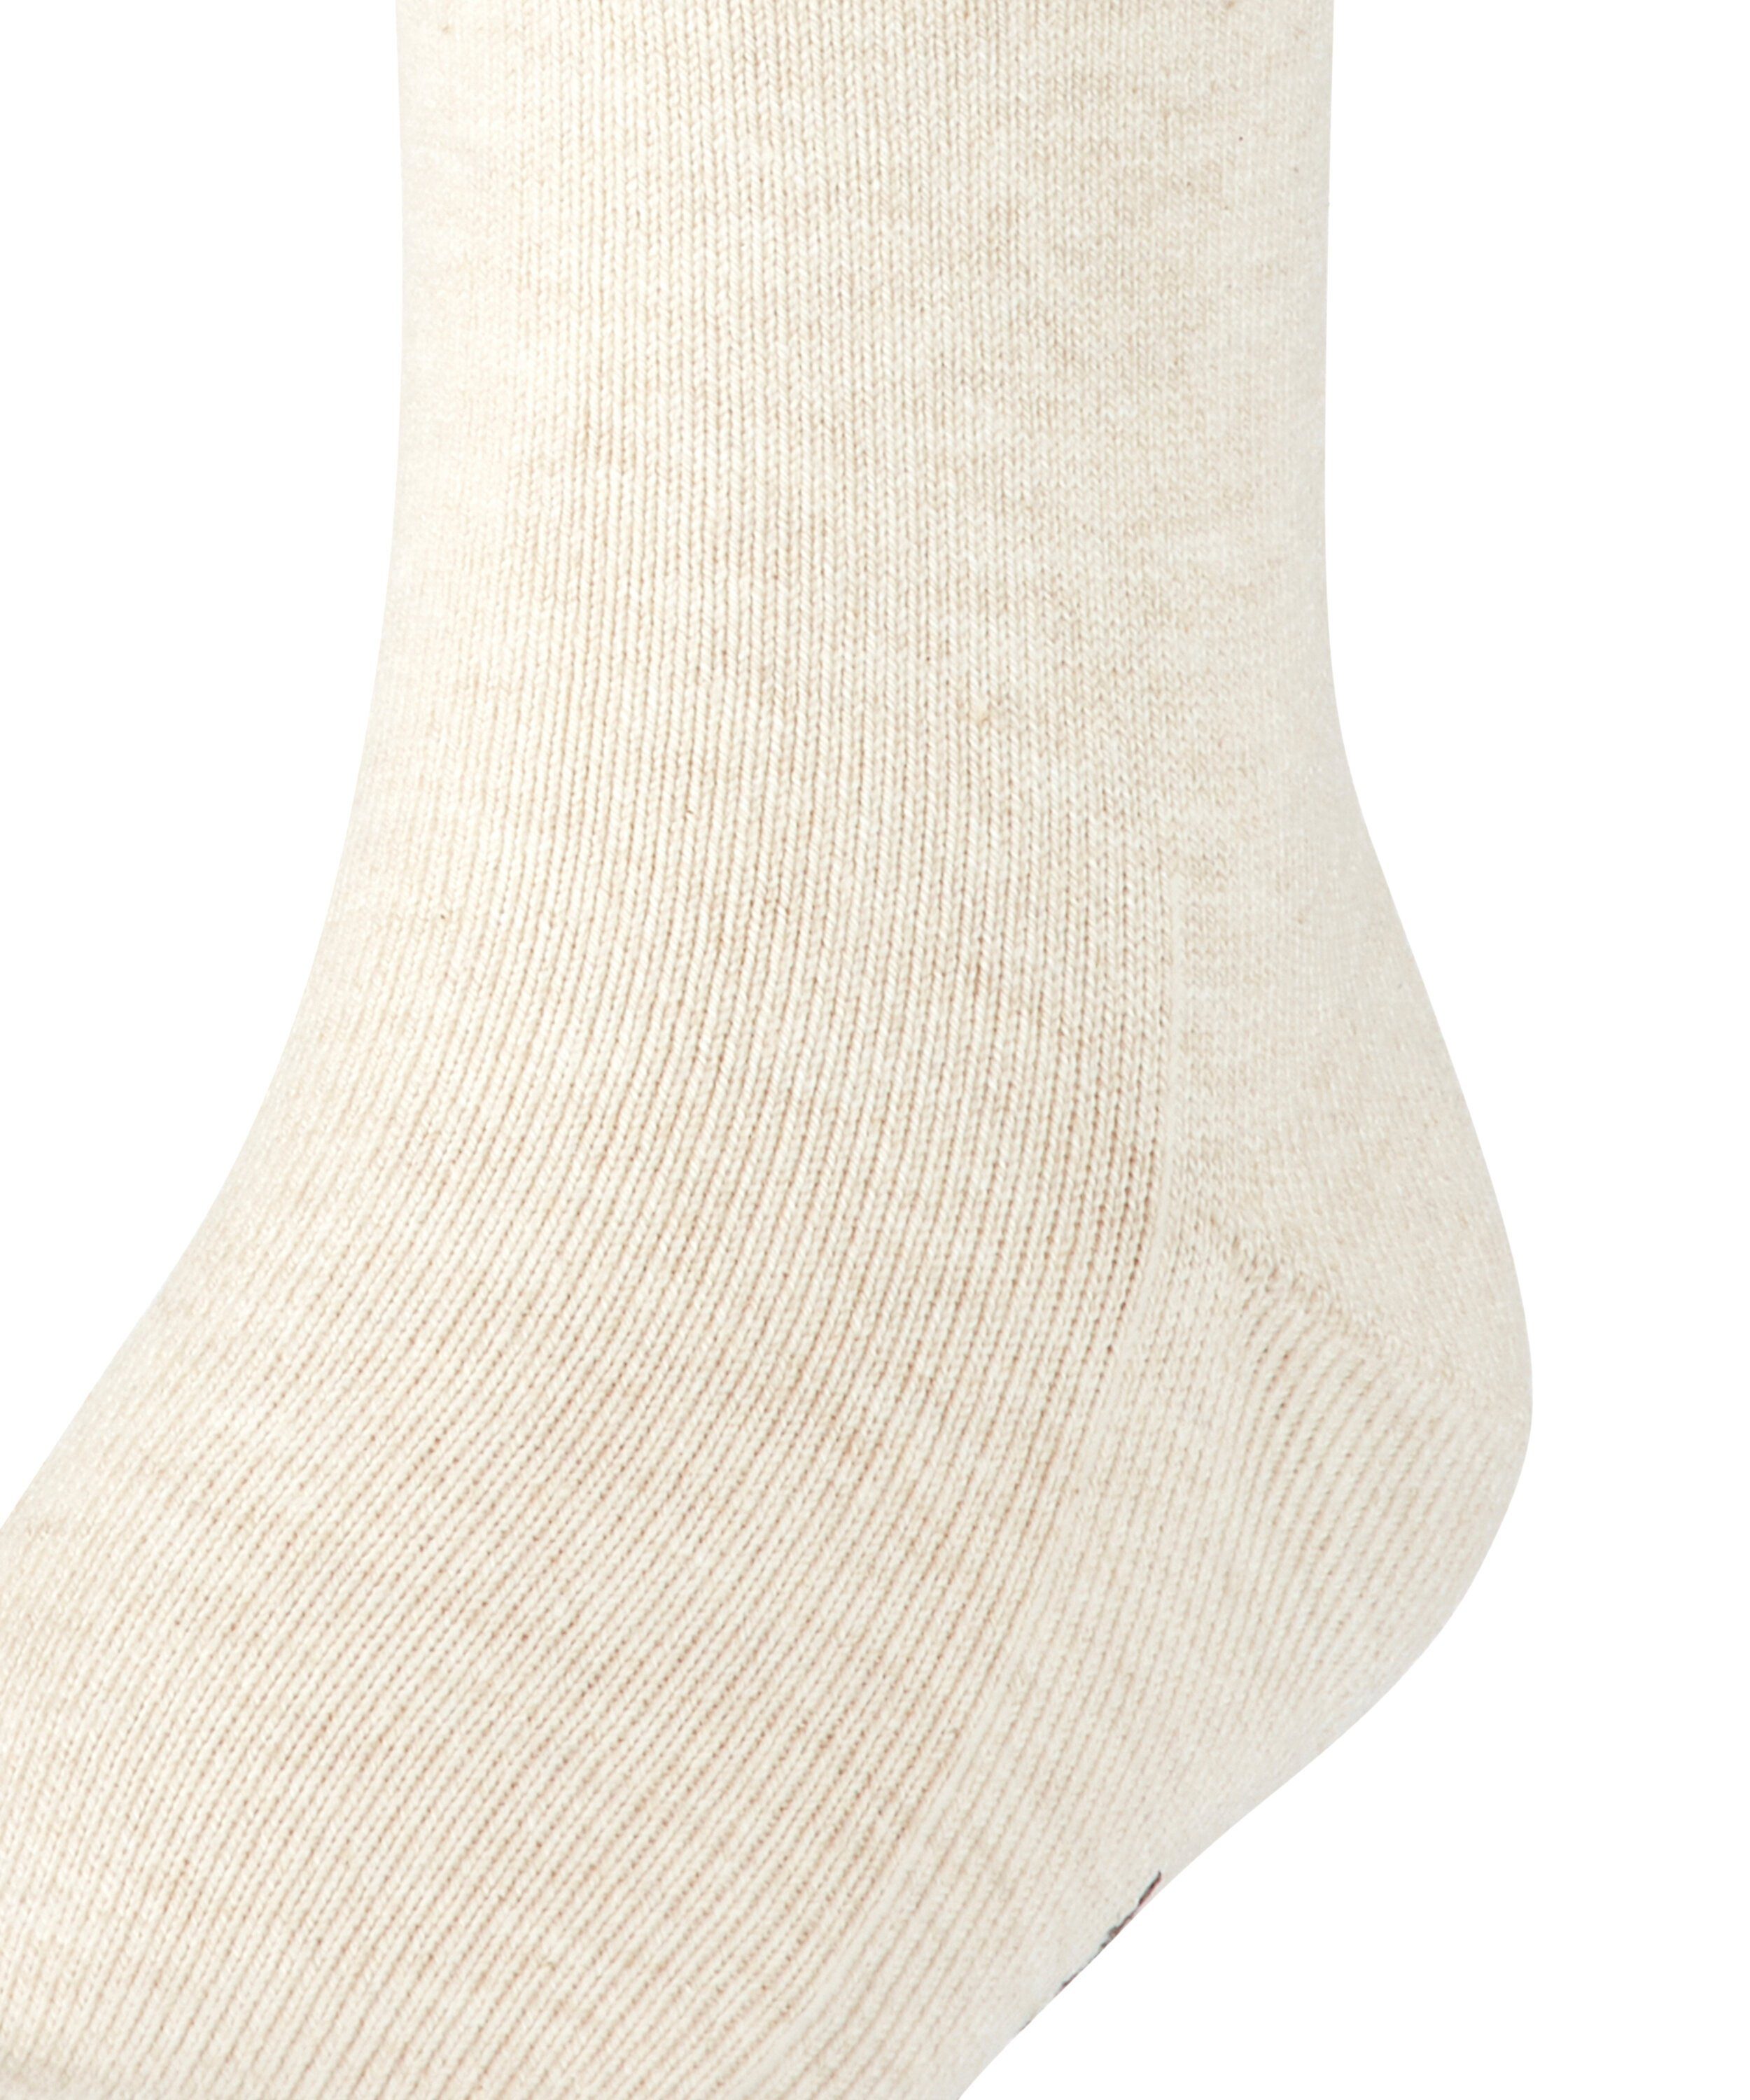 (4650) Family mel. sand Socken (1-Paar) FALKE